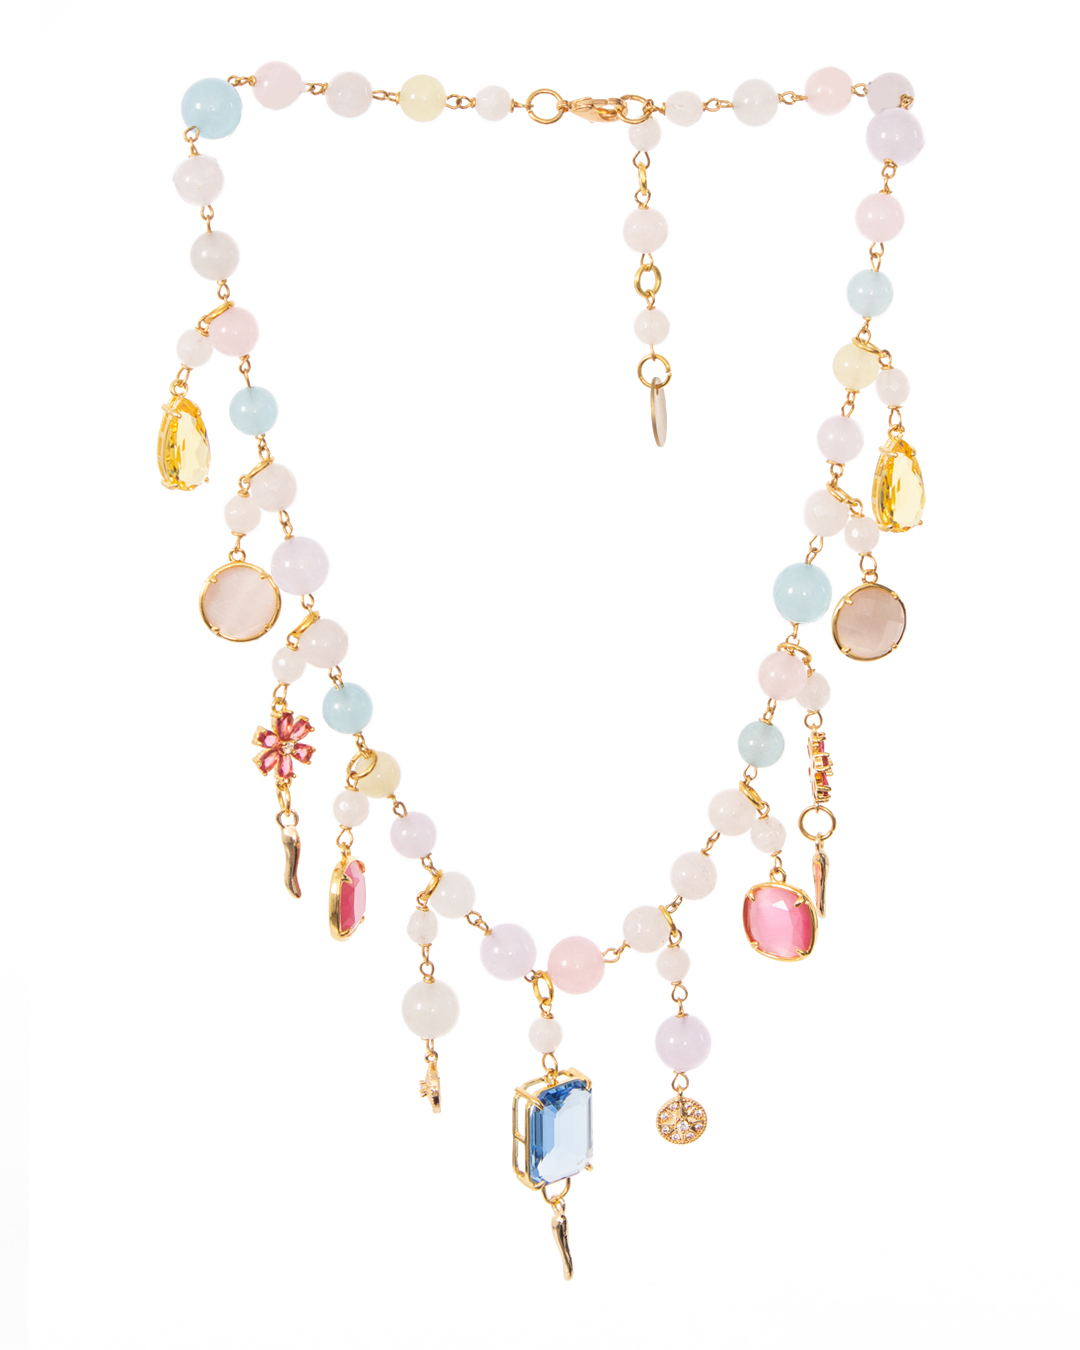 ожерелье Marina Fossati ILLYPILLI CORTA6 золотой+розовый+голубой UNI, размер UNI, цвет золотой+розовый+голубой ILLYPILLI CORTA6 золотой+розовый+голубой UNI - фото 1